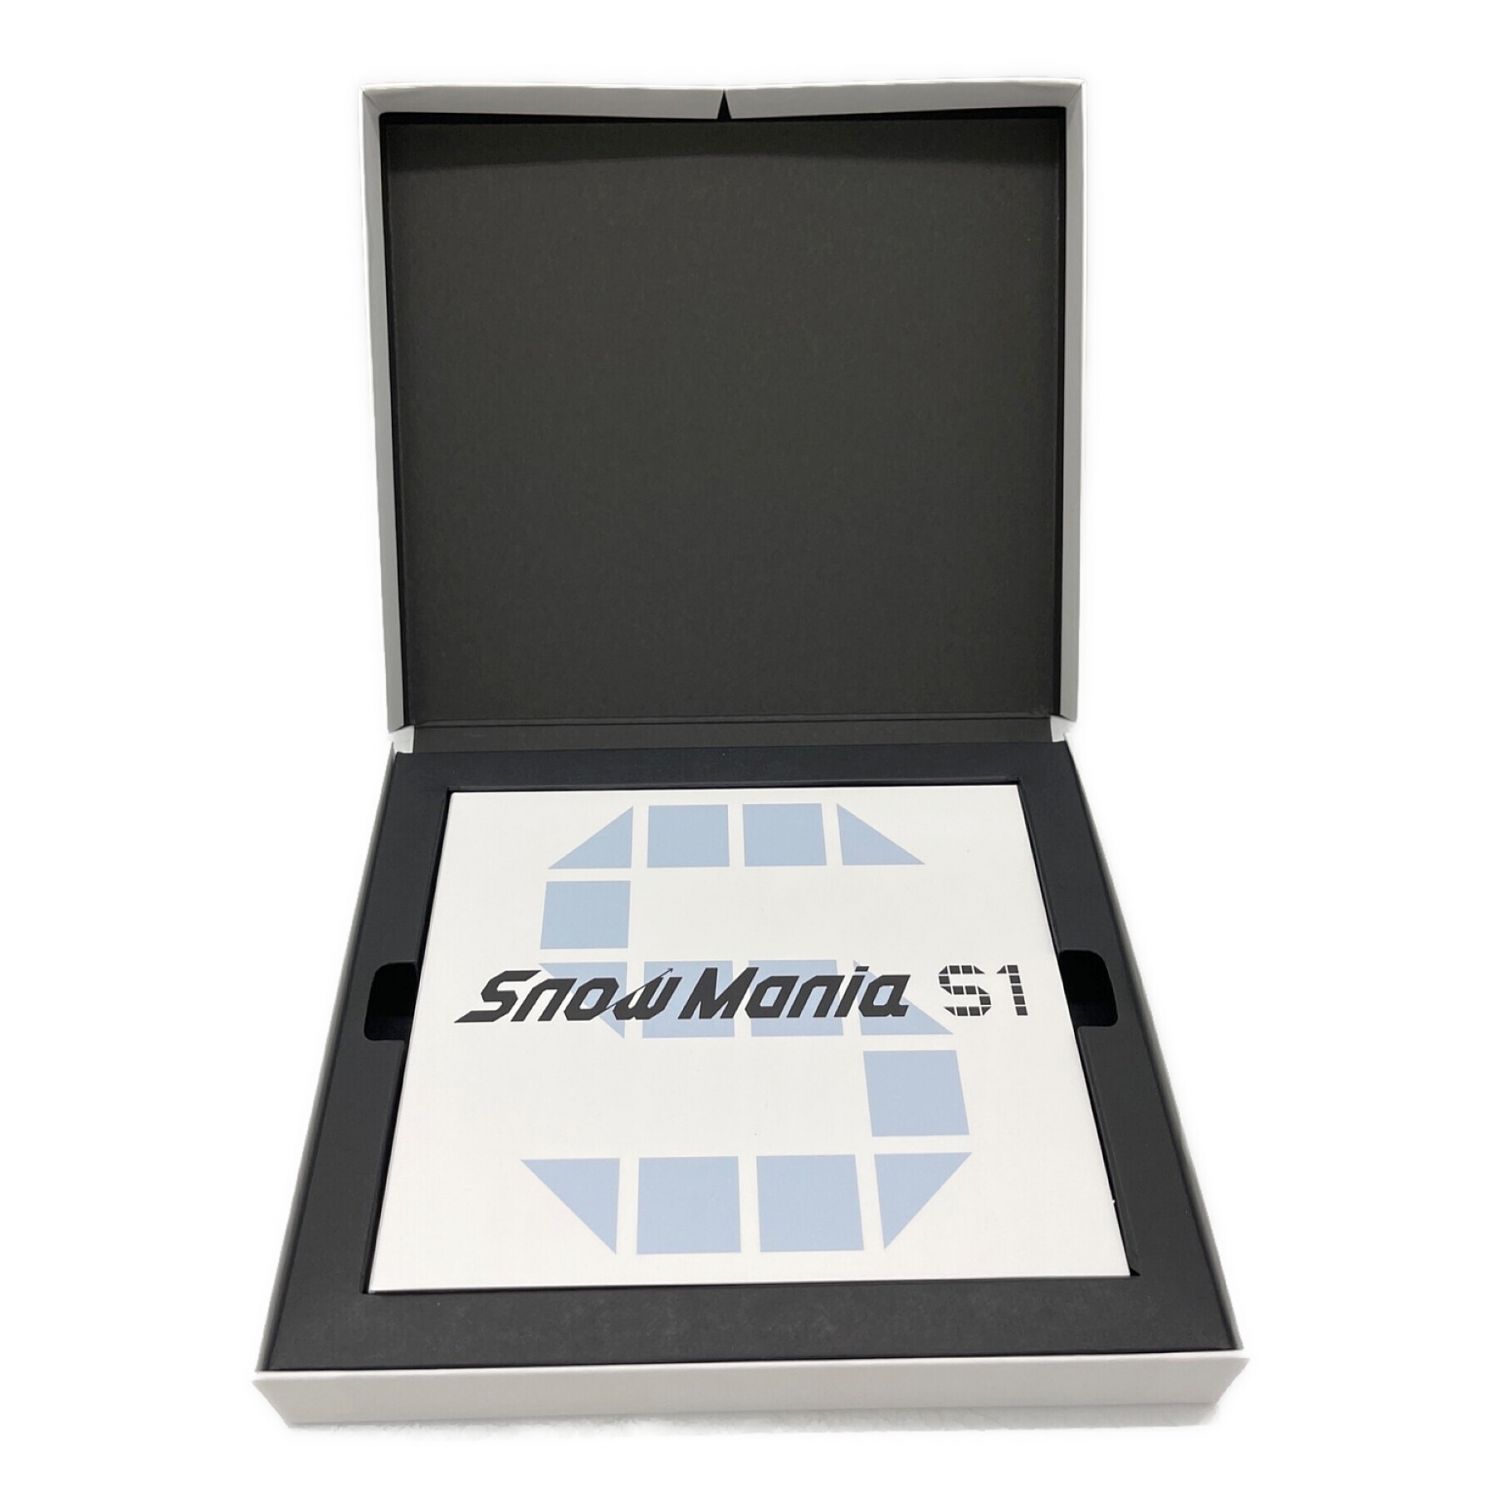 SNOW MAN (スノーマン) CD+Blu-ray Snow Mania S1 初回盤B 